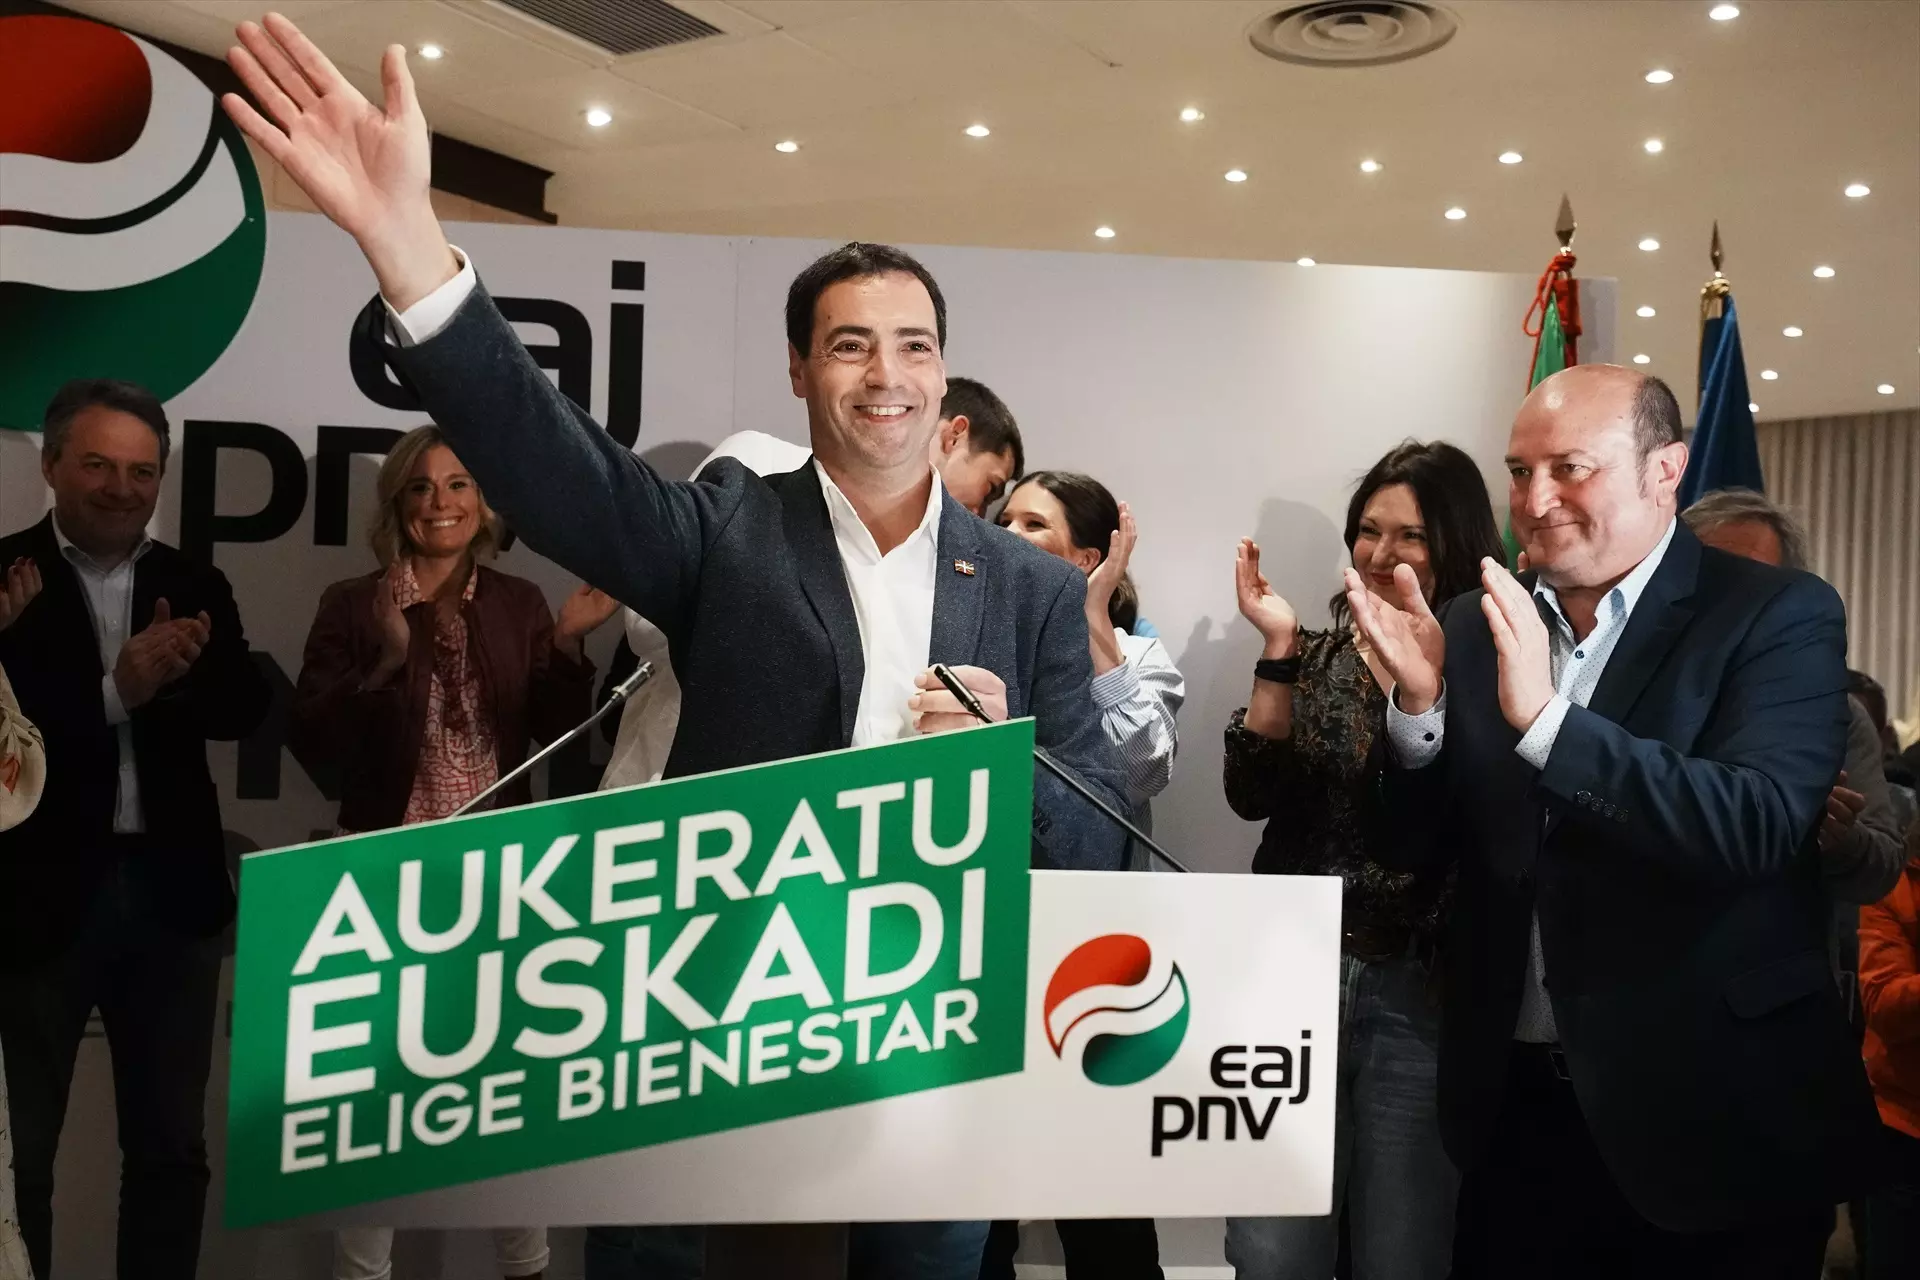 El candidato del PNV a lehendakari, Imanol Pradales, celebra los resultados electorales. — H. Bilbao / Europa press